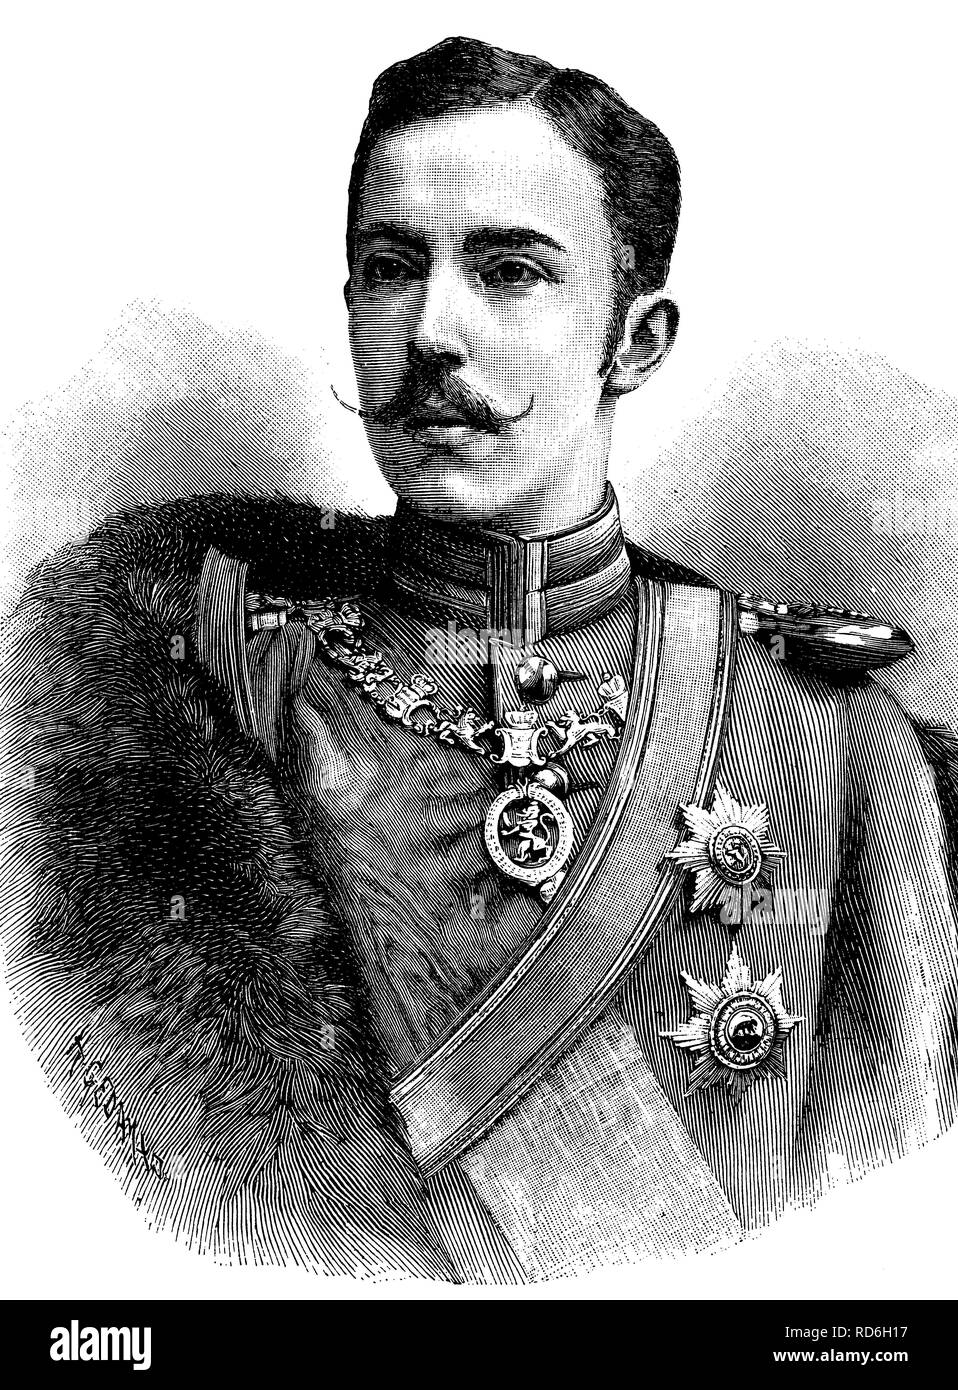 Le prince Frédéric Charles de Hesse, 1868 - 1940, Roi de la Finlande, de l'illustration historique vers 1893 Banque D'Images